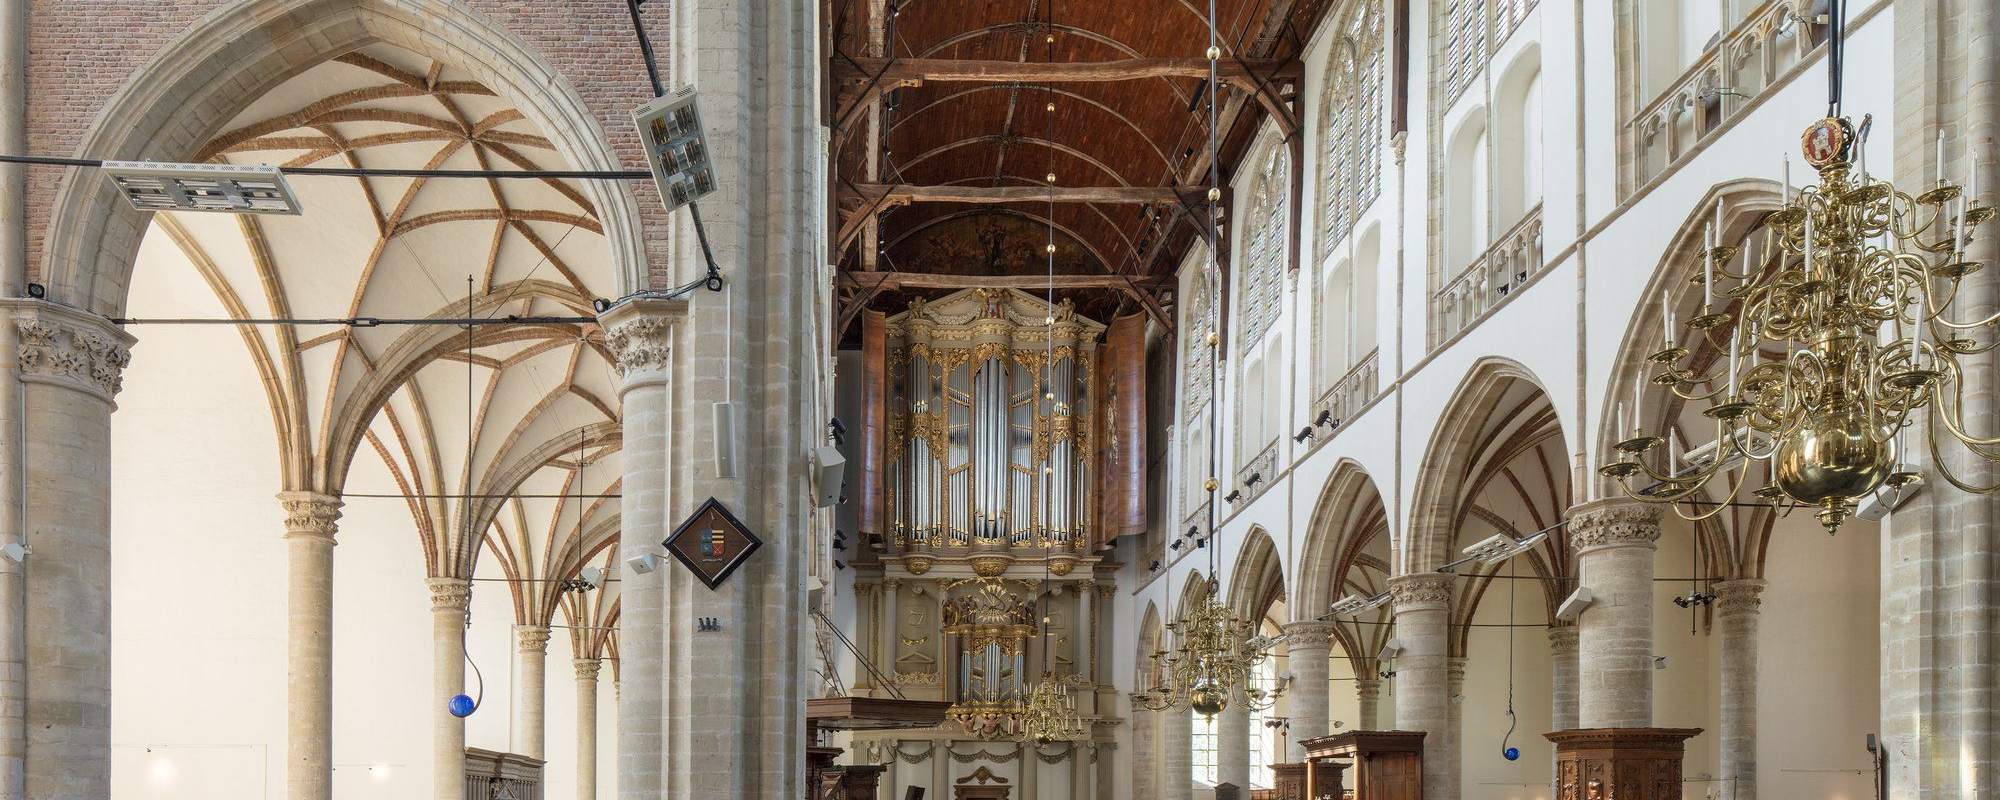 Grote Kerk Alkmaar 4972 85 Borghouts